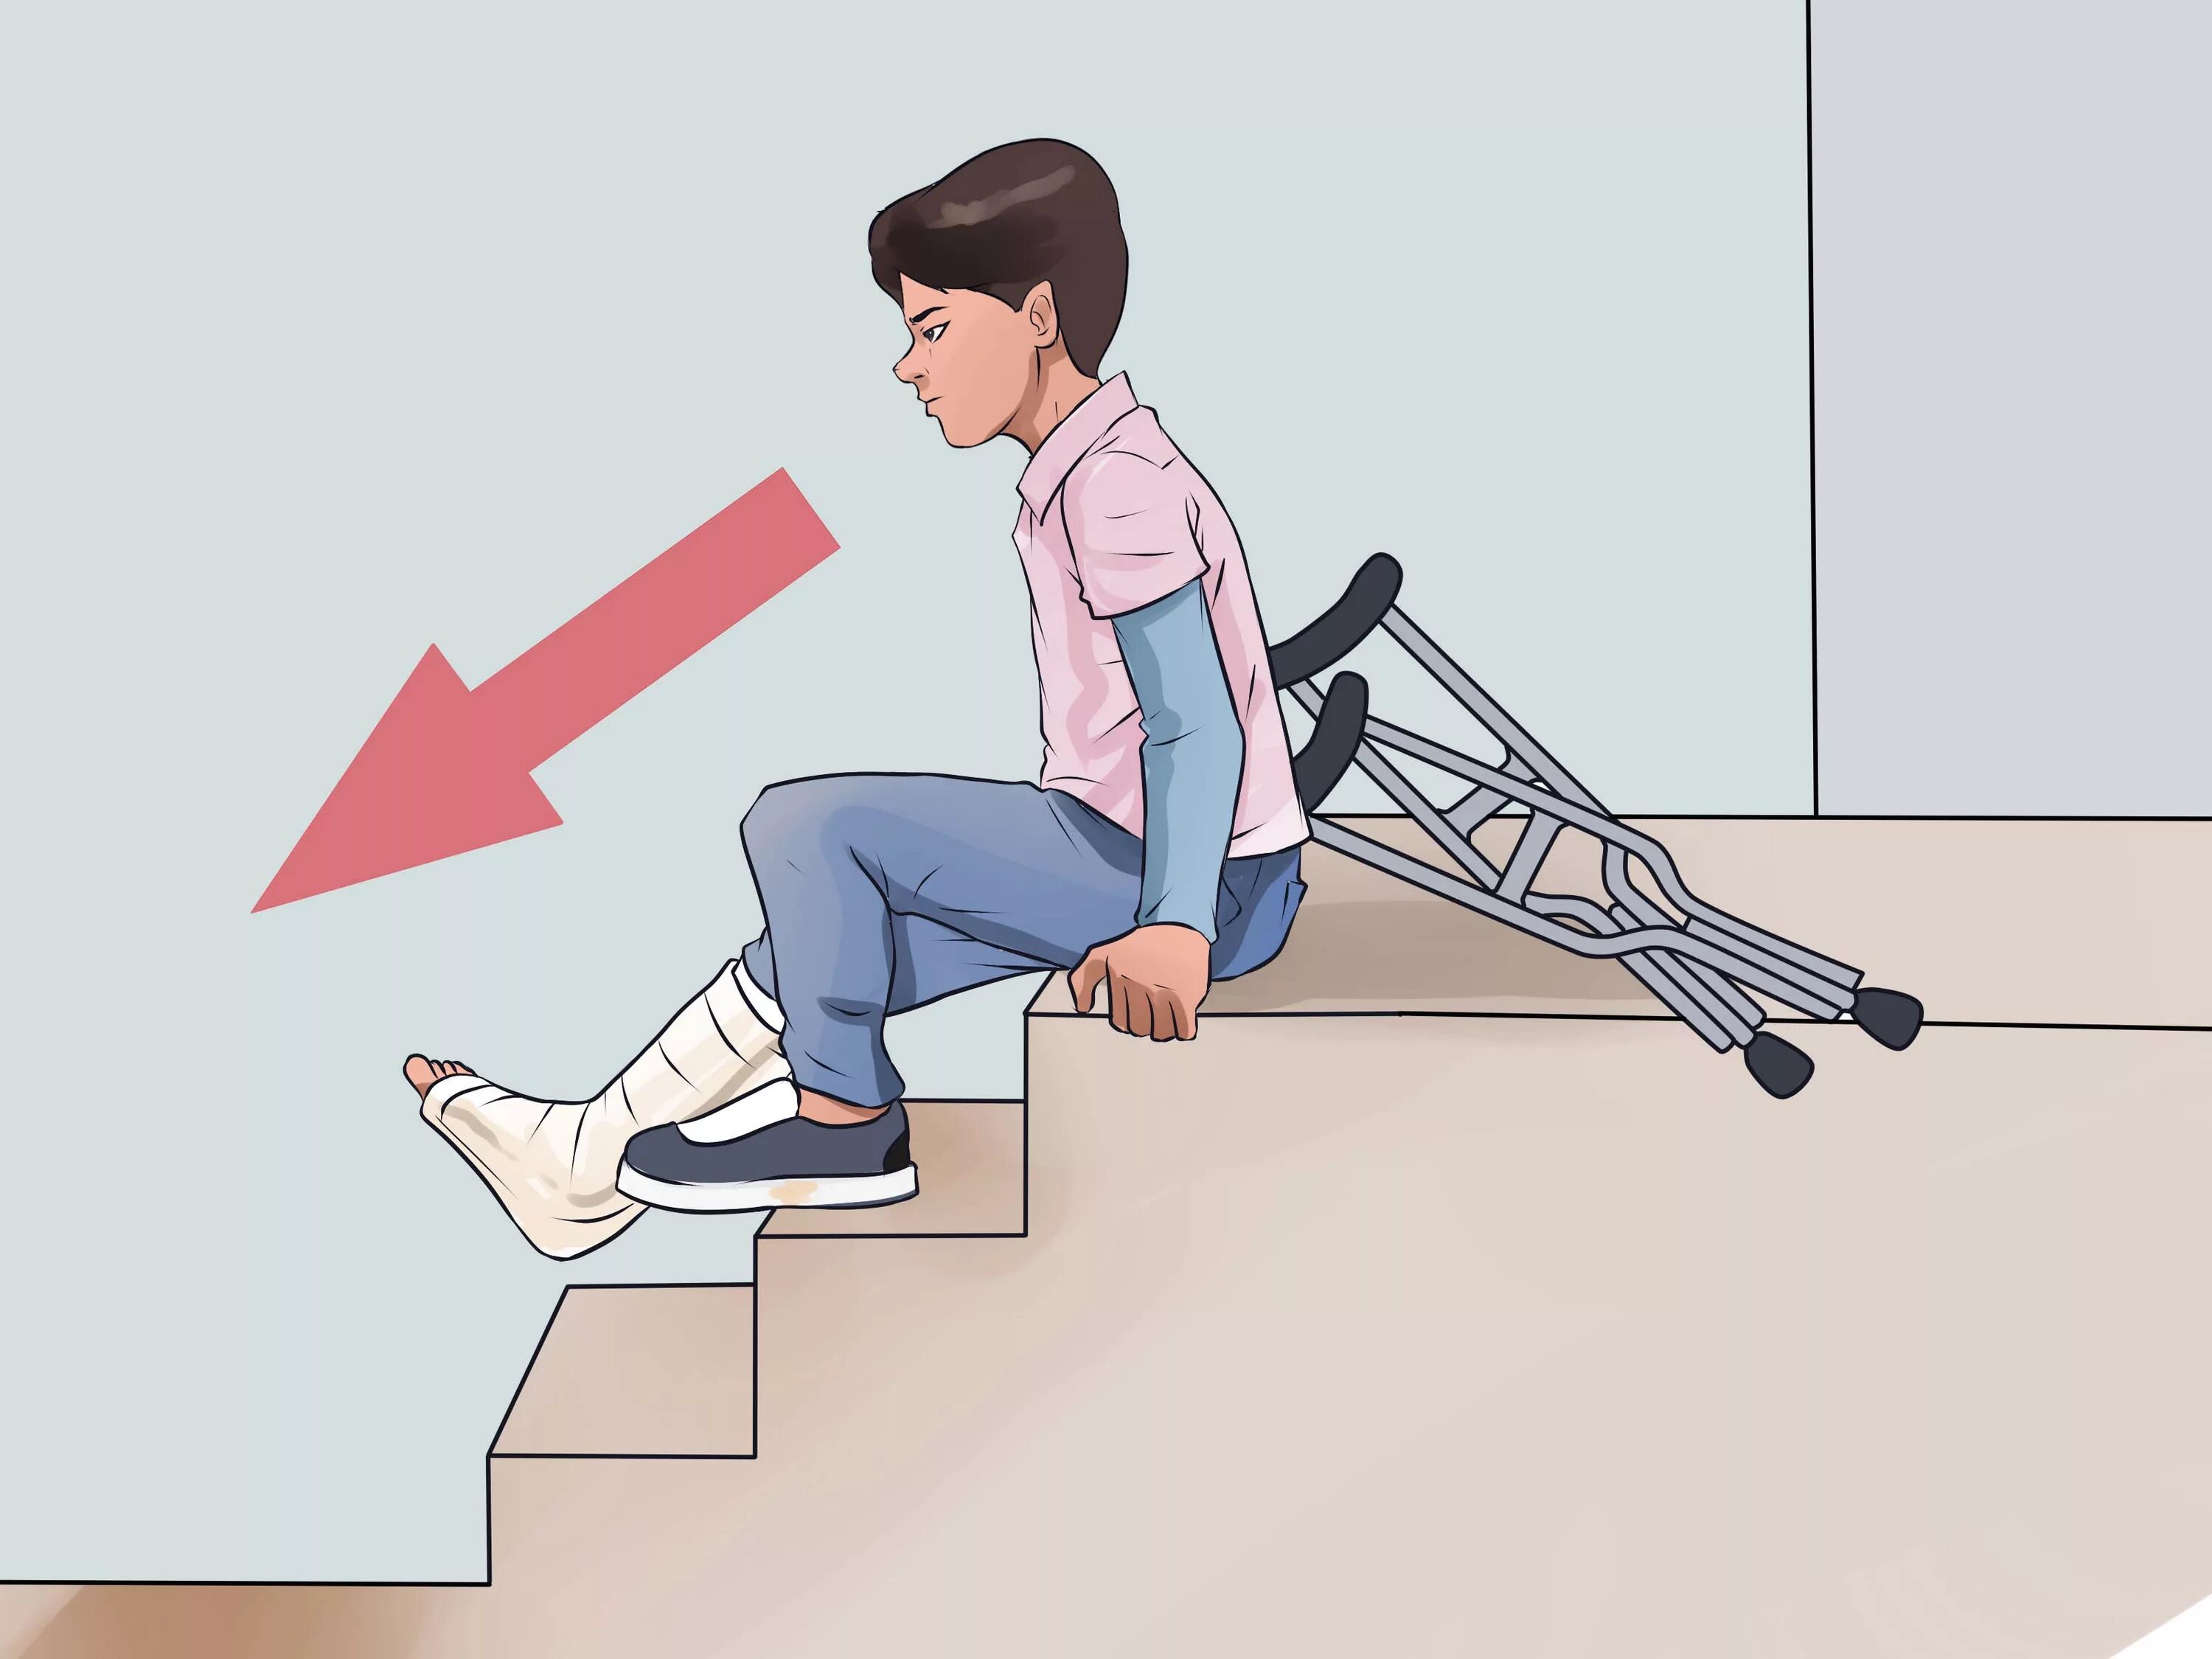 Подниматься спускаться по лестнице. Спуск по лестнице на костылях. Техника хождения на костылях по ступенькам. Ходьба на костылях по лестнице.